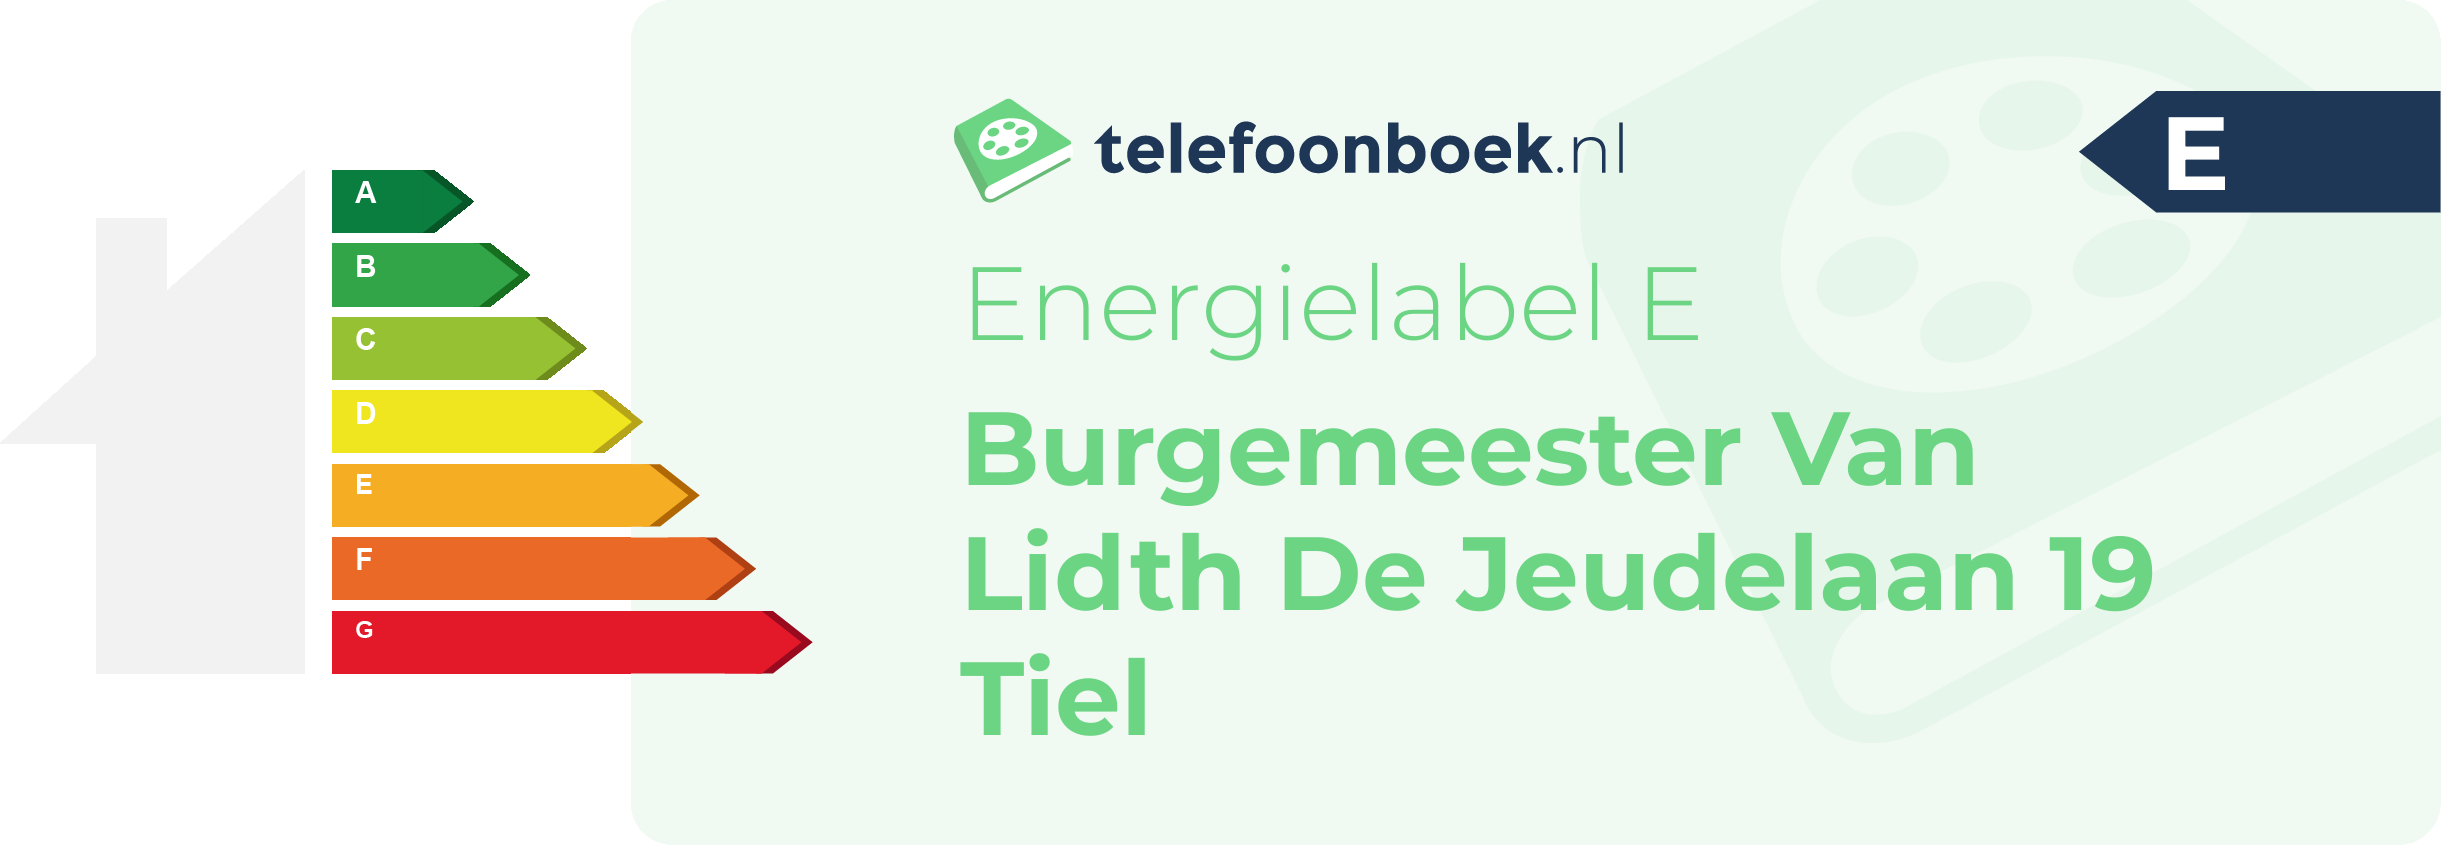 Energielabel Burgemeester Van Lidth De Jeudelaan 19 Tiel